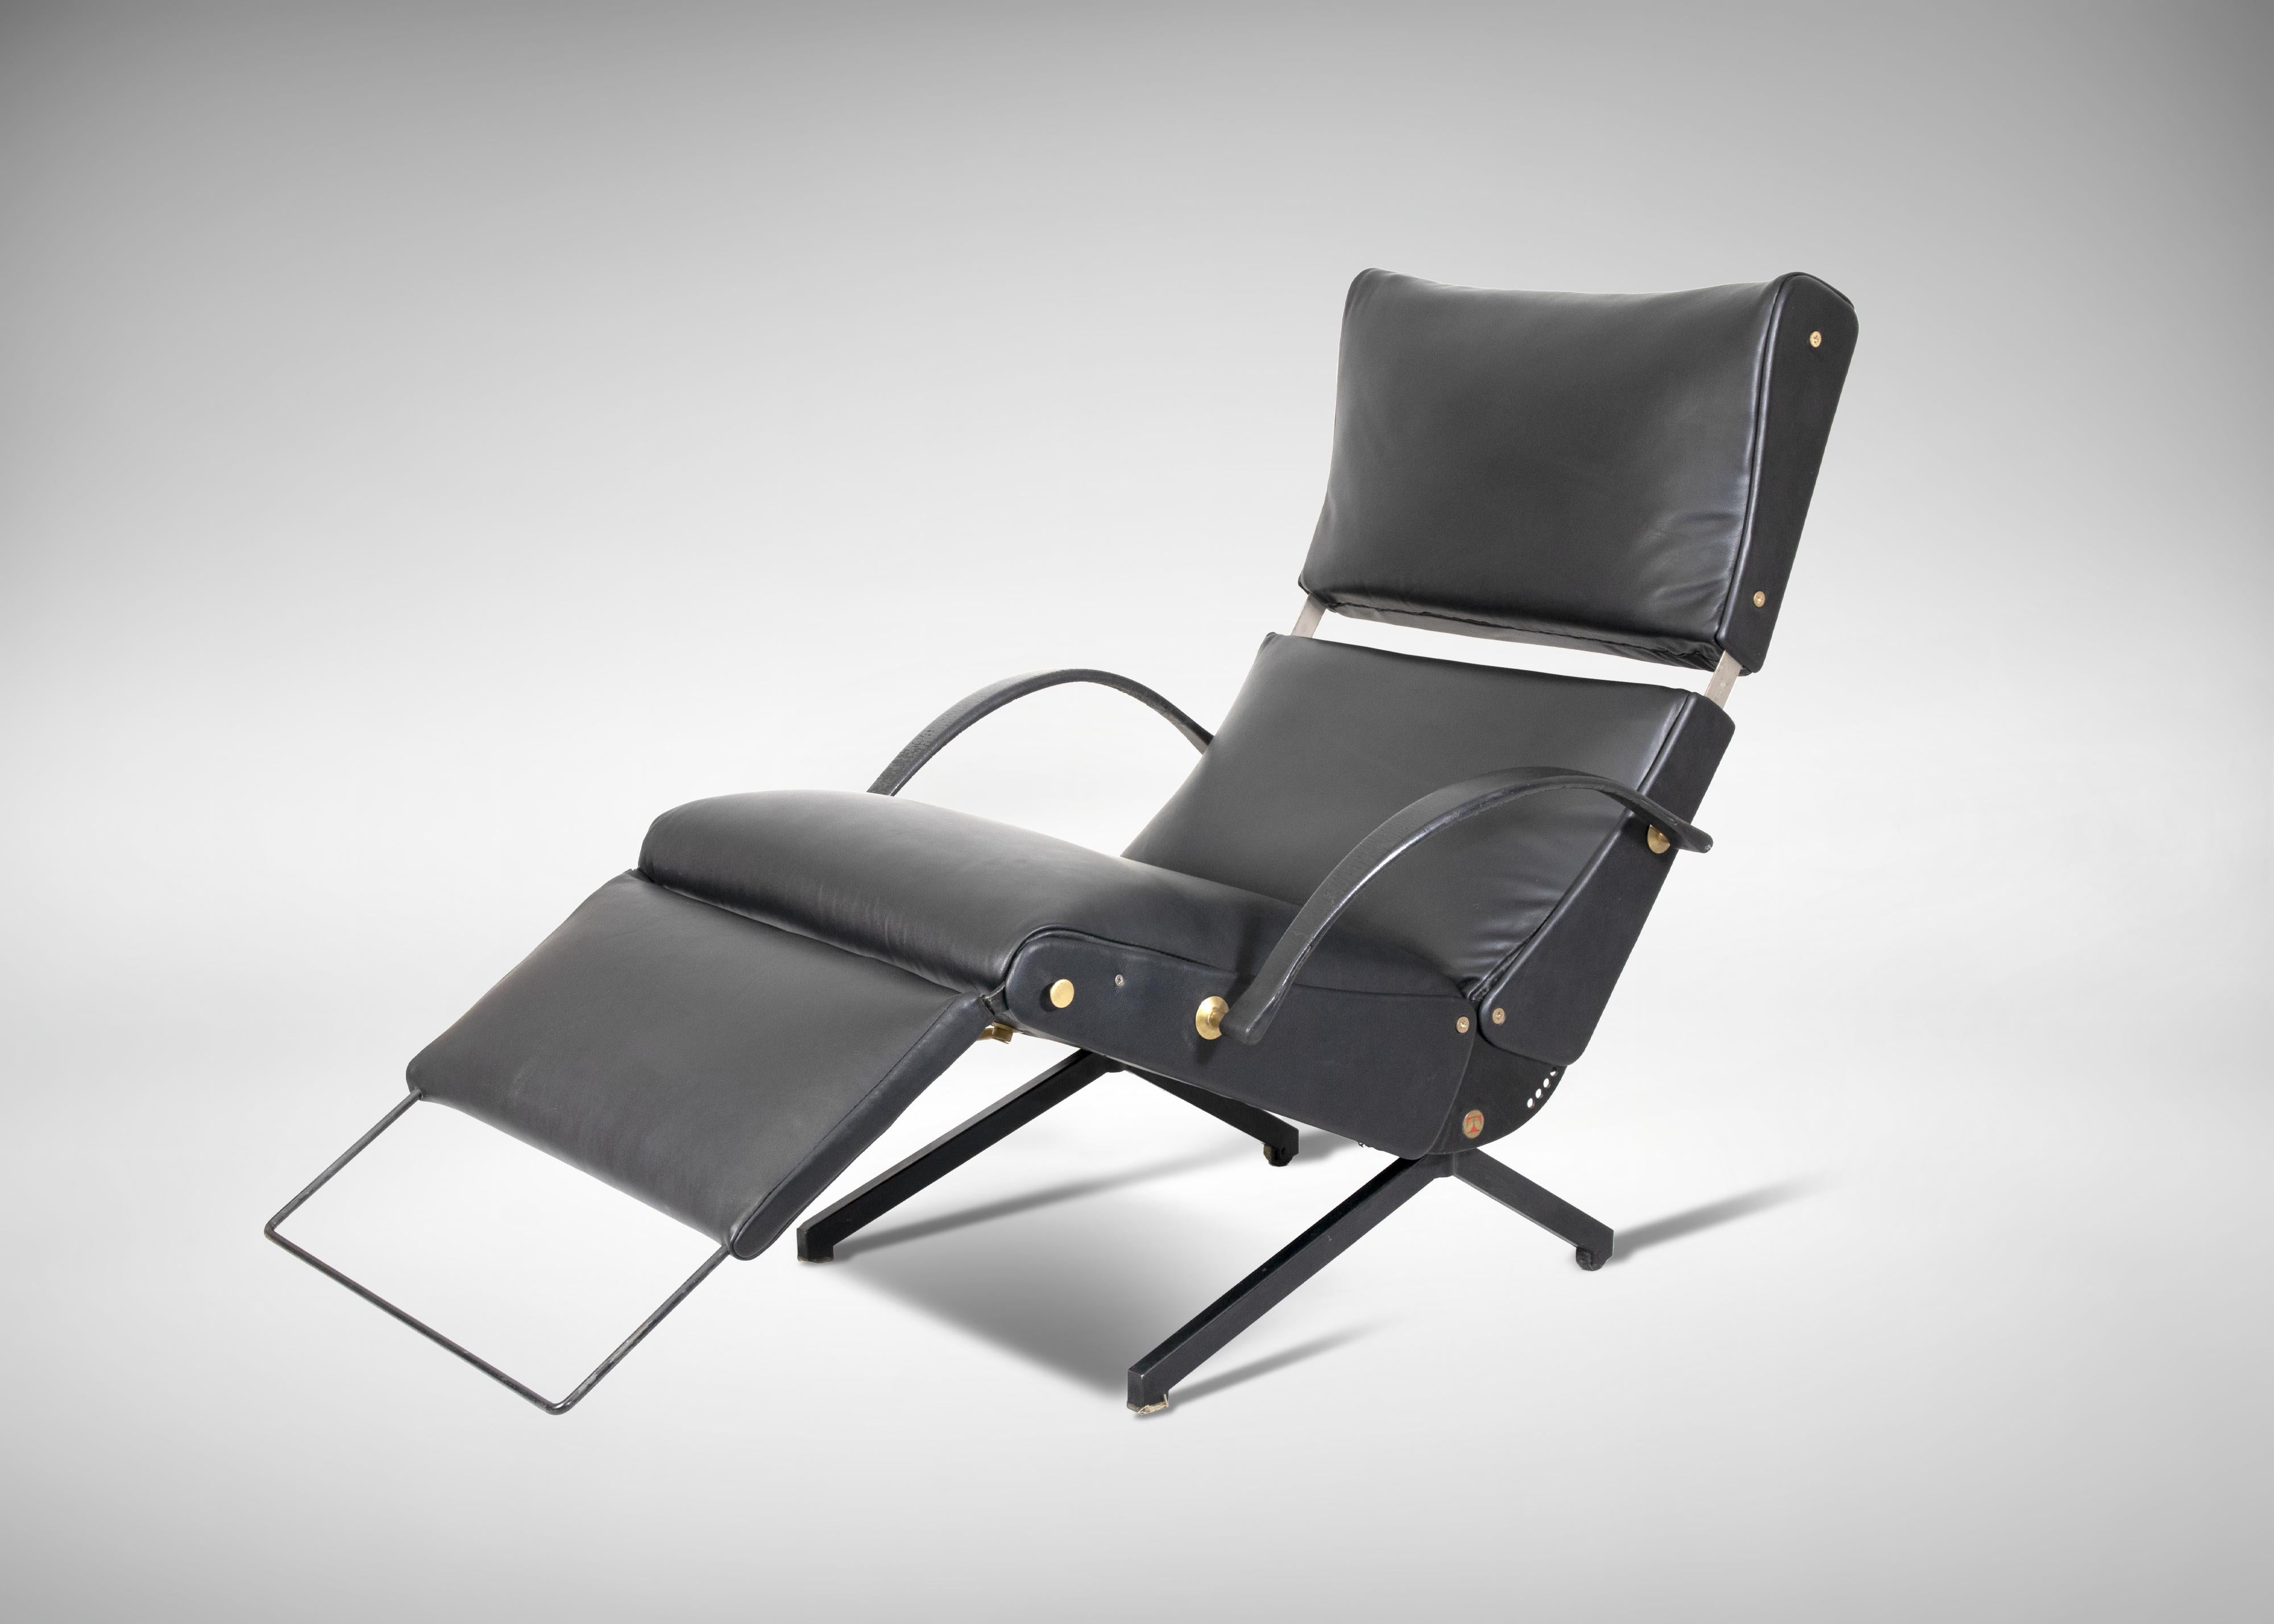 Vintage P40 Verstellbarer Sessel, realisiert von Osvaldo Borsani für Tecno, 1956. Erste Ausgabe dieses kultigen Sessels, in ausgezeichnetem Zustand.
Heute ist das P40 in seiner ersten, bis in die 1960er Jahre produzierten Auflage im MOMA in New York